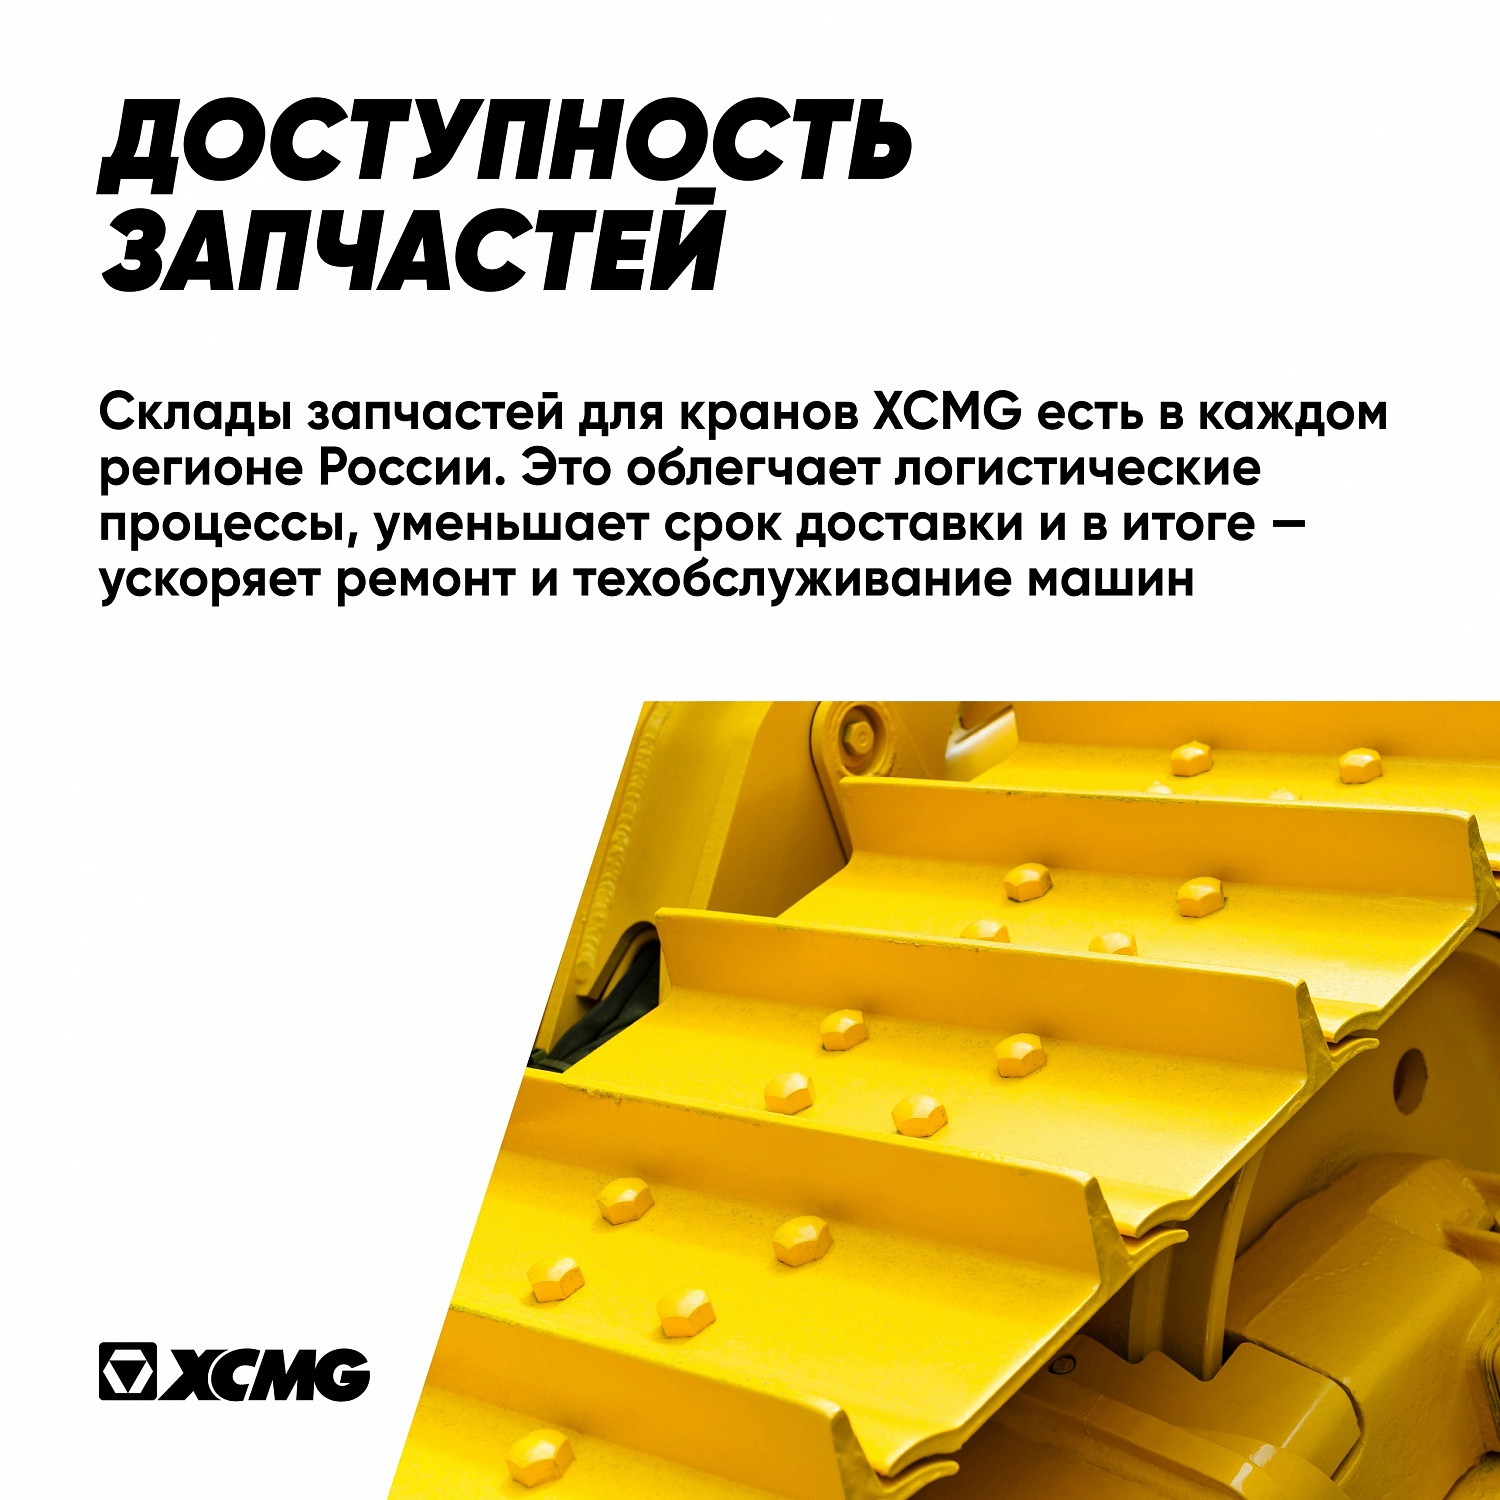 XCMG – крупнейший производитель кранов в мире